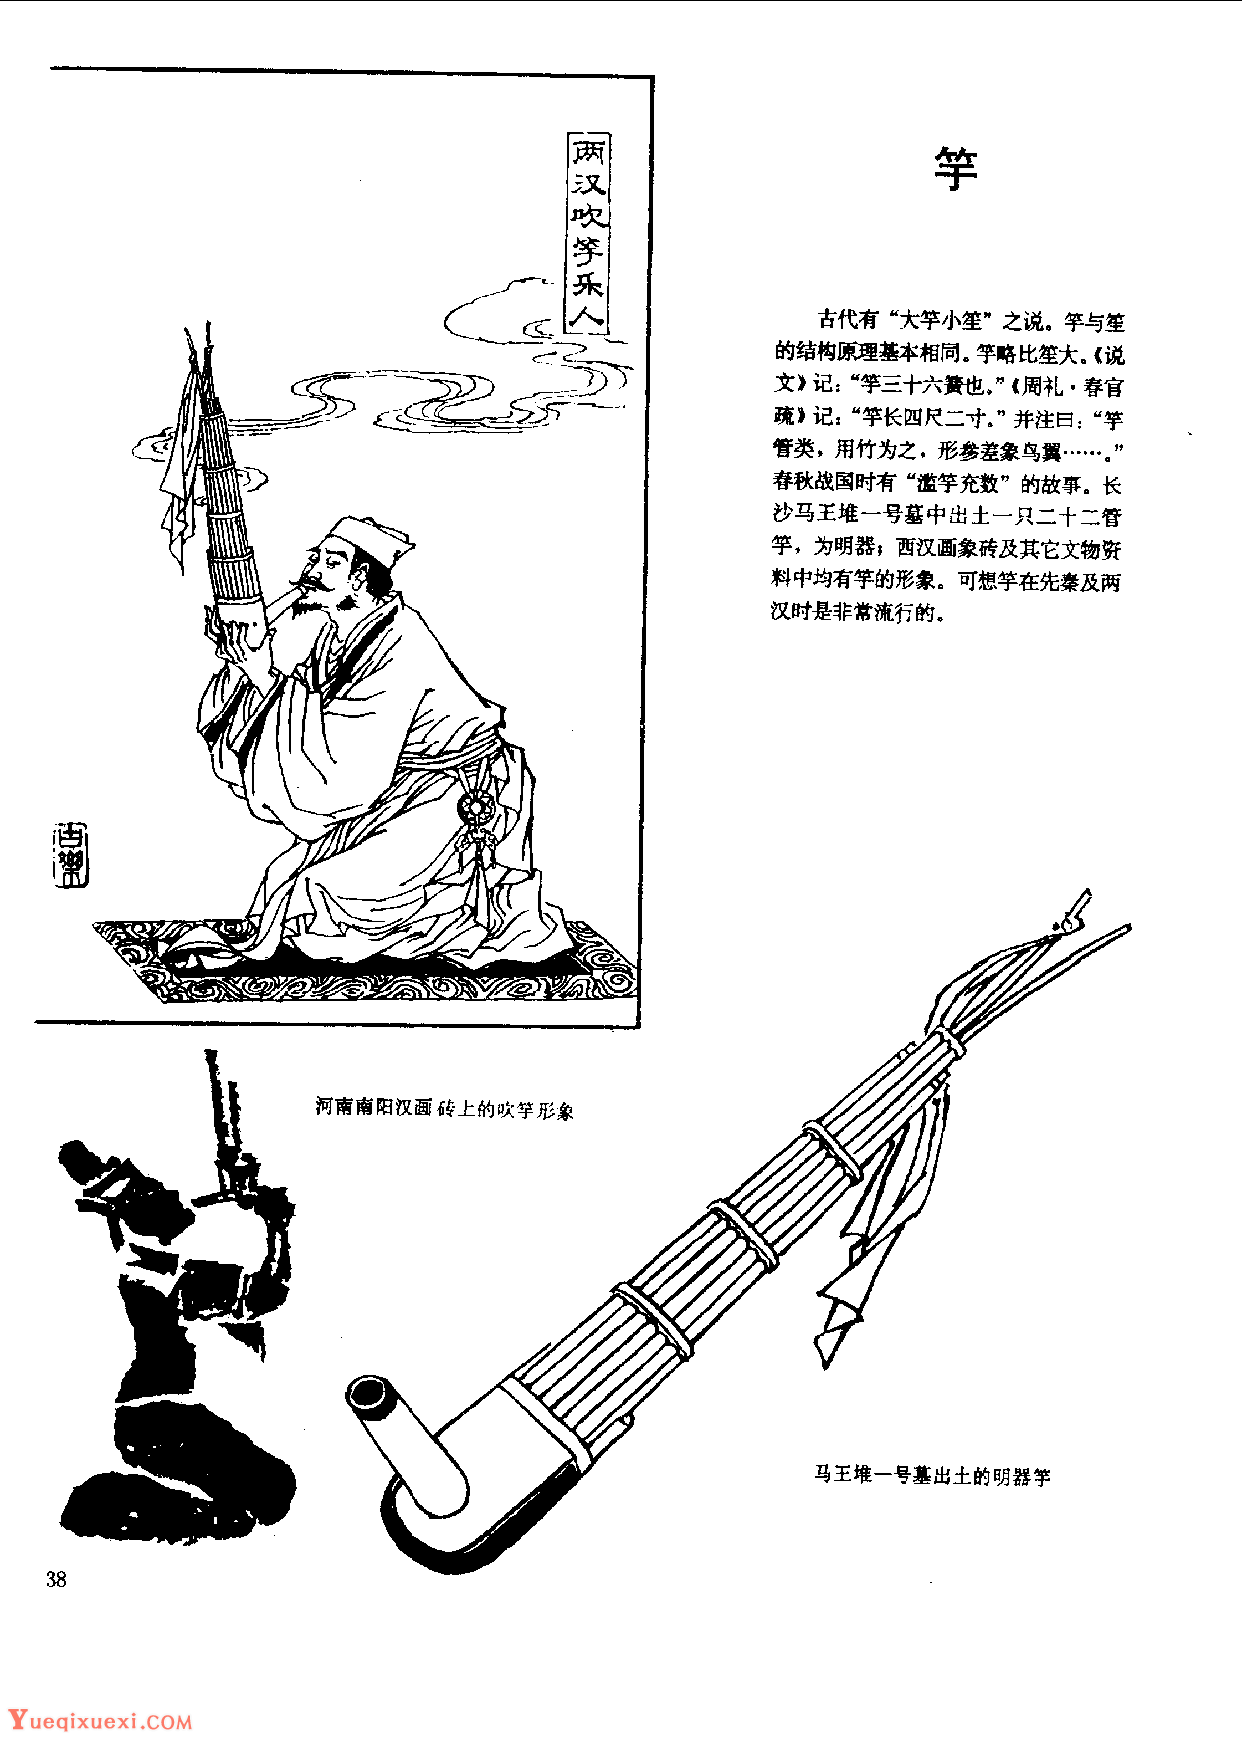 中国古代乐器《竽》